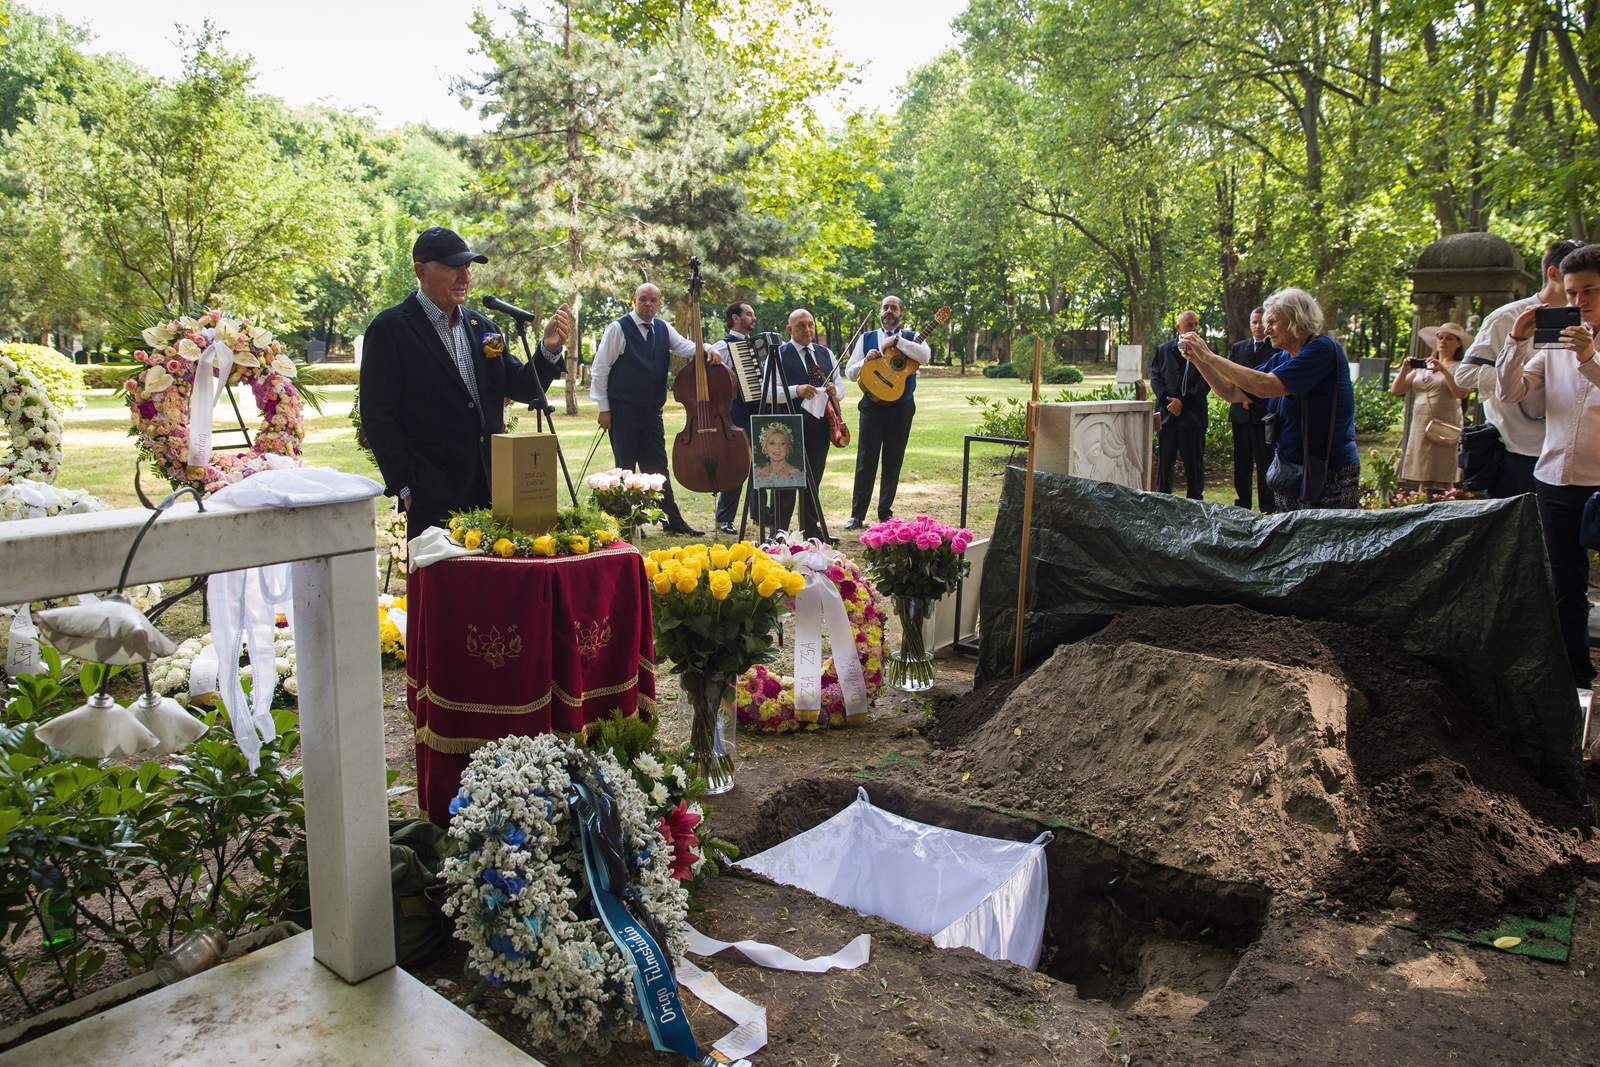 Pepeo Zsazse Gábor položen je u utorak na groblje u ulici Fiumei u Budimpešti, gotovo pet godina nakon njezine smrti.